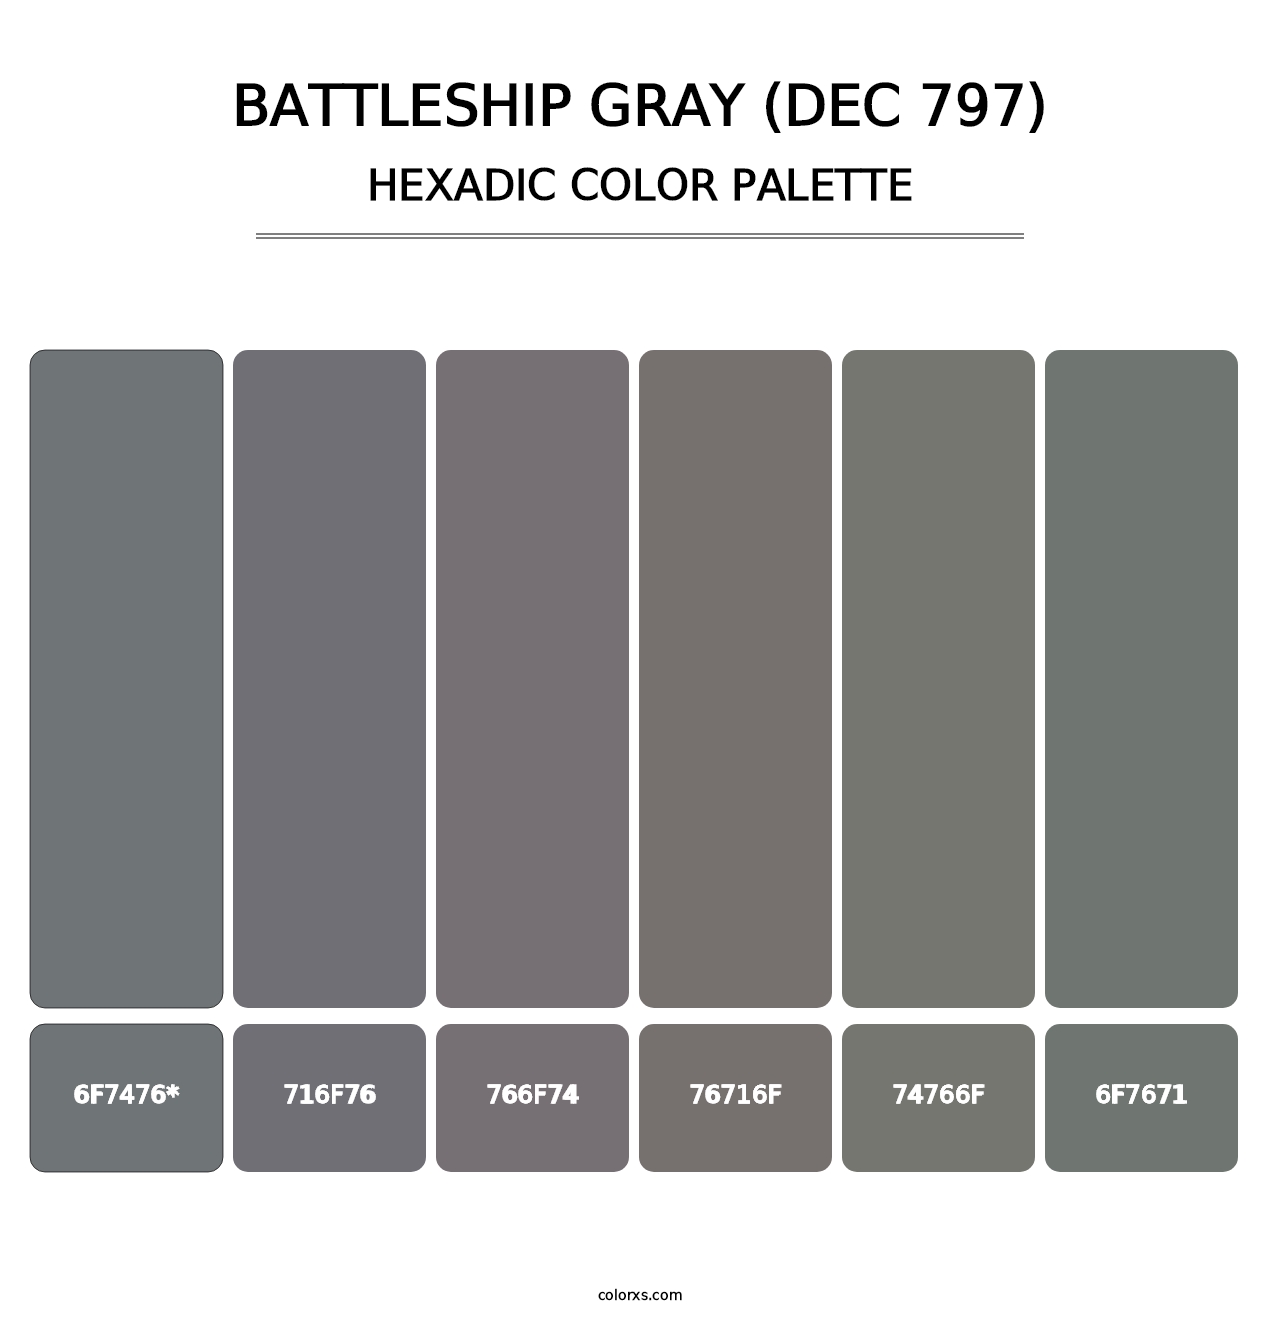 Battleship Gray (DEC 797) - Hexadic Color Palette